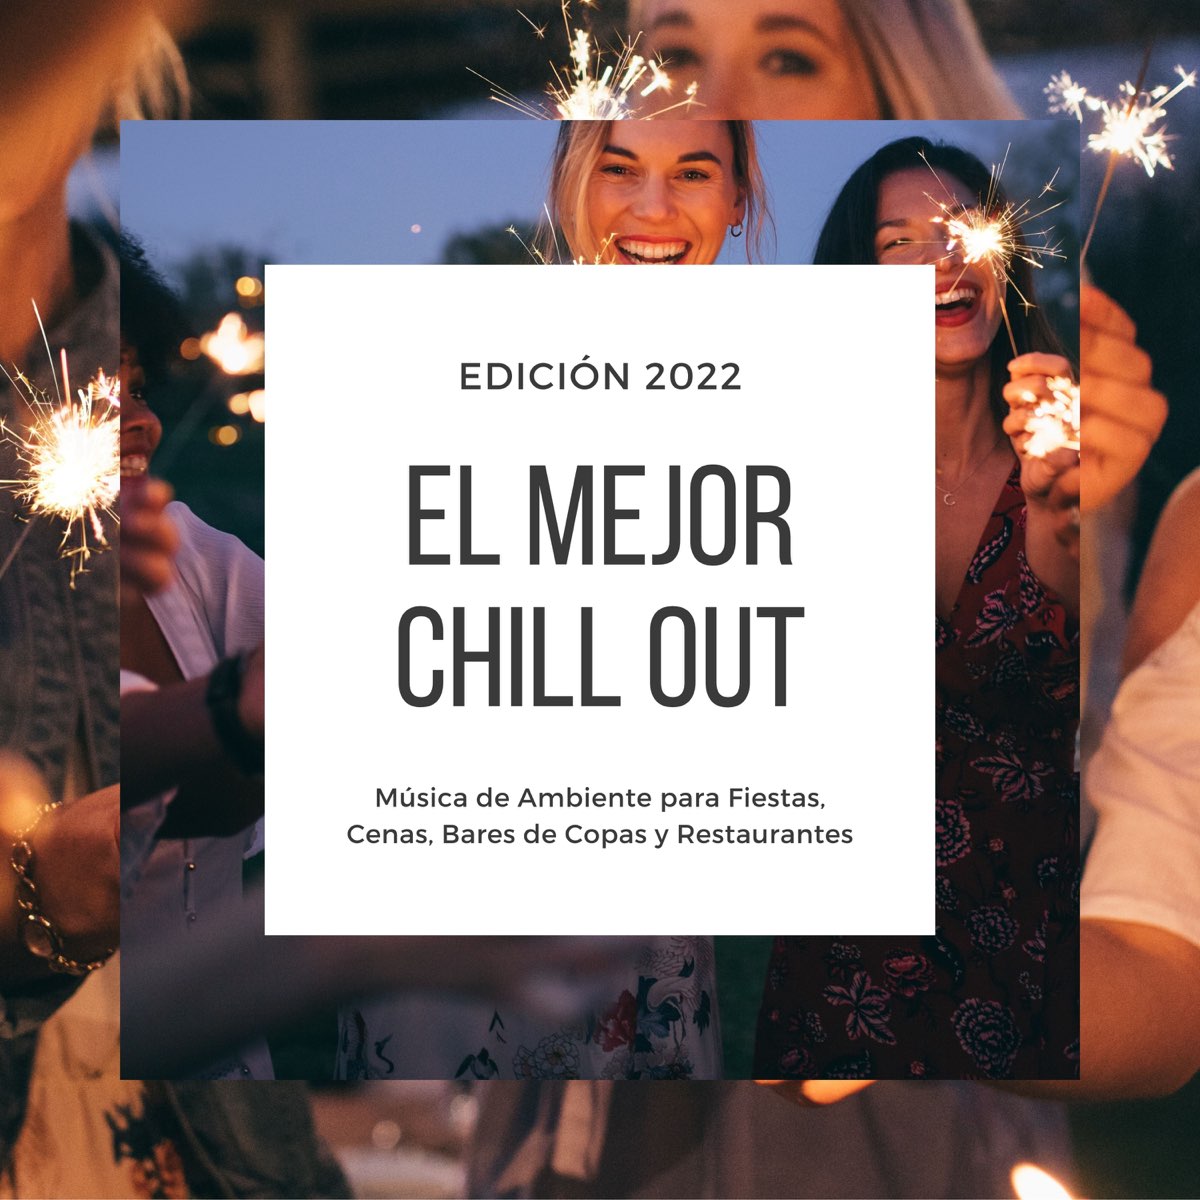 El Mejor Chill Out Edición 2022 - Música de Ambiente para Fiestas, Cenas,  Bares de Copas y Restaurantes - Album by Gloria Sarmiento - Apple Music